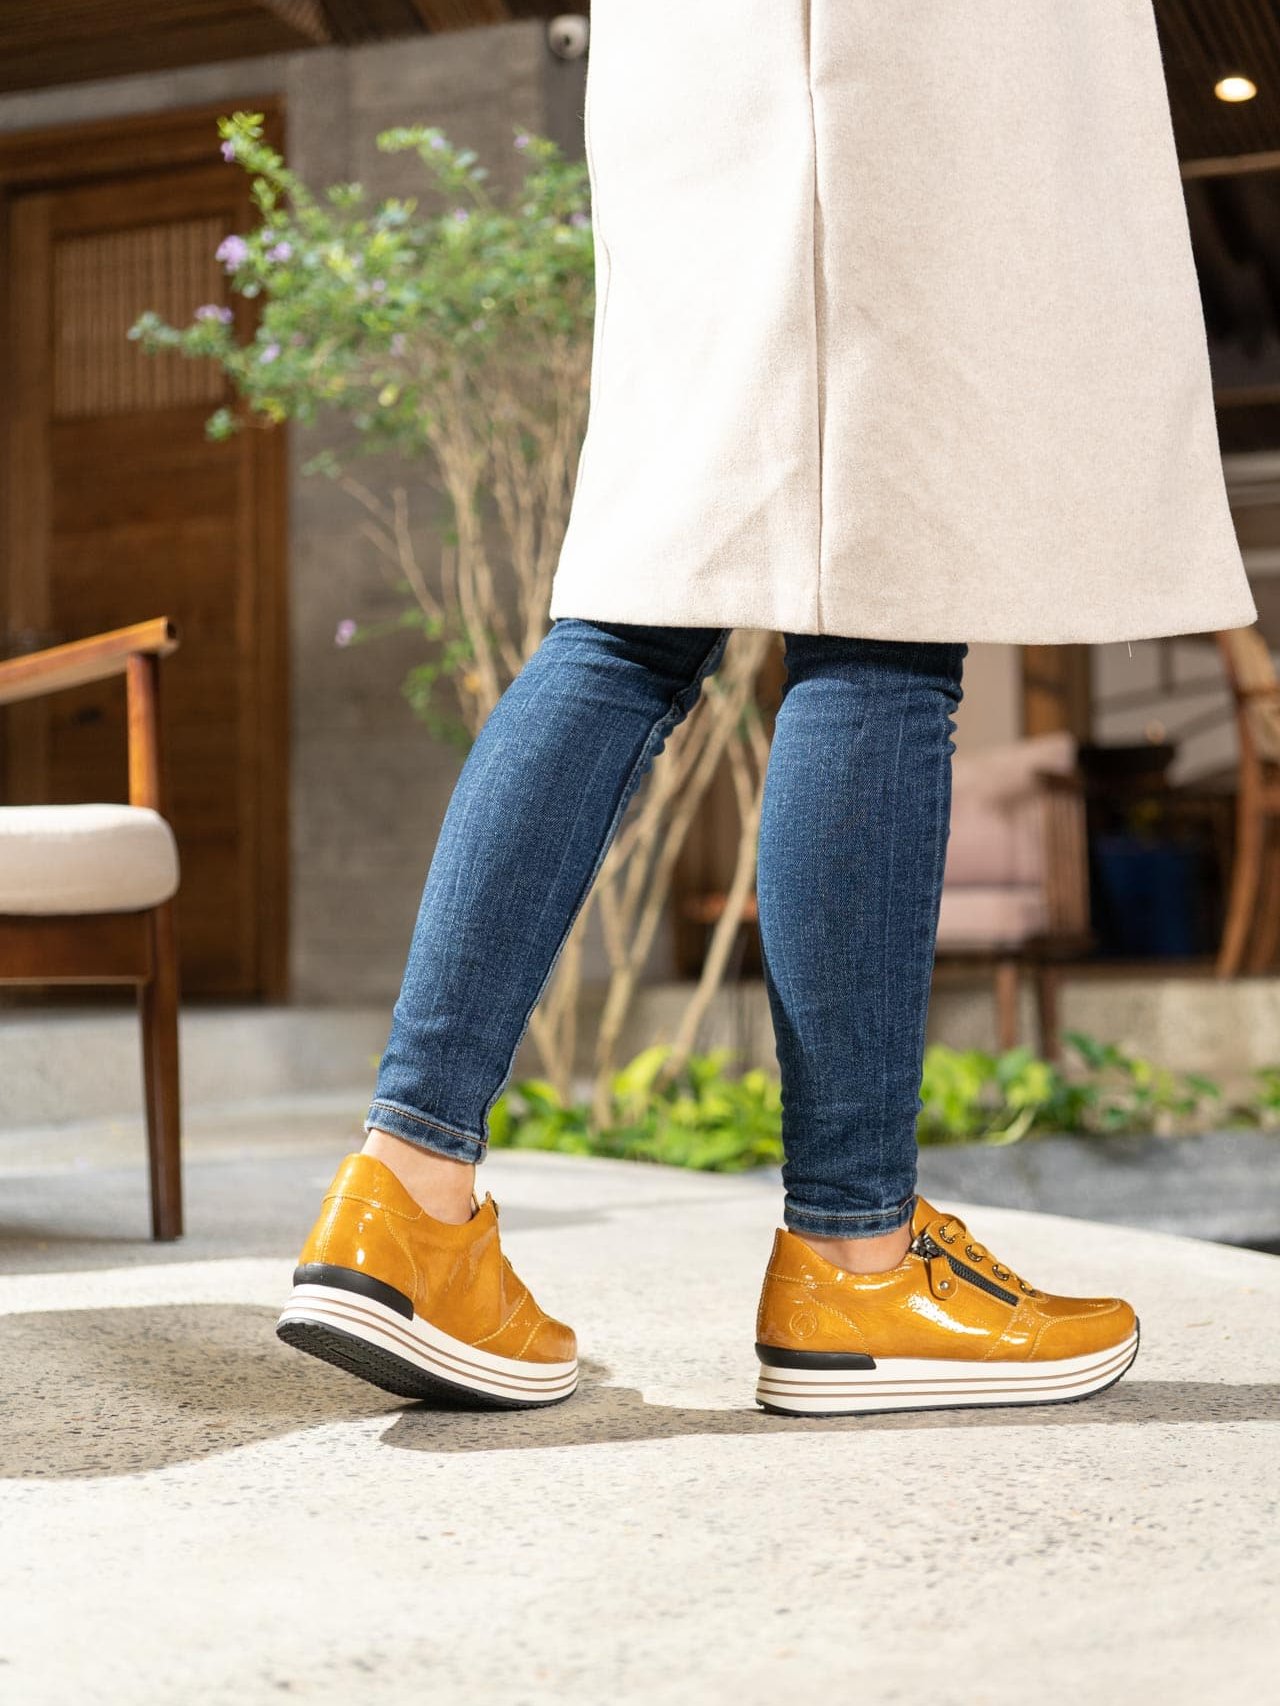 Gelbe Sneaker aus Kunstlack mit Reißverschluss und Schnürung und Wechselfußbett. Passend zu den Schuhen trägt die Frau einen hellen Mantel und eine enge Jeanshose.